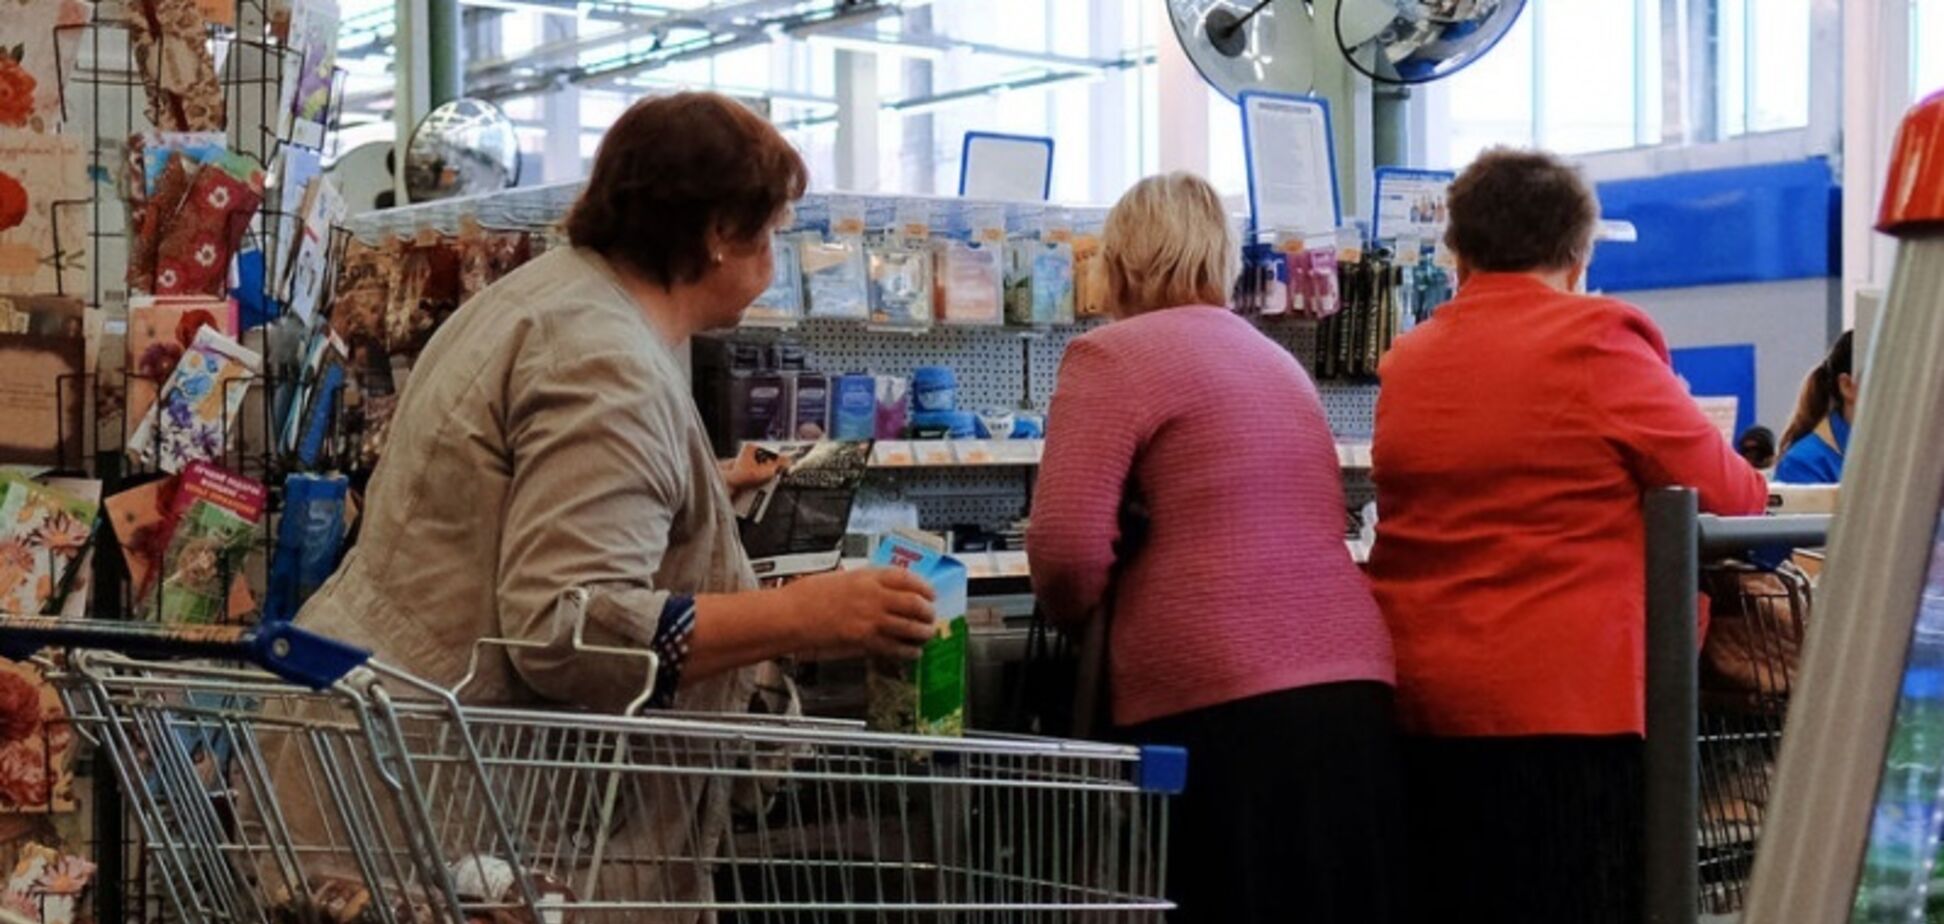 Нахабно обраховують: у Росії поскаржилися на чеки в супермаркетах